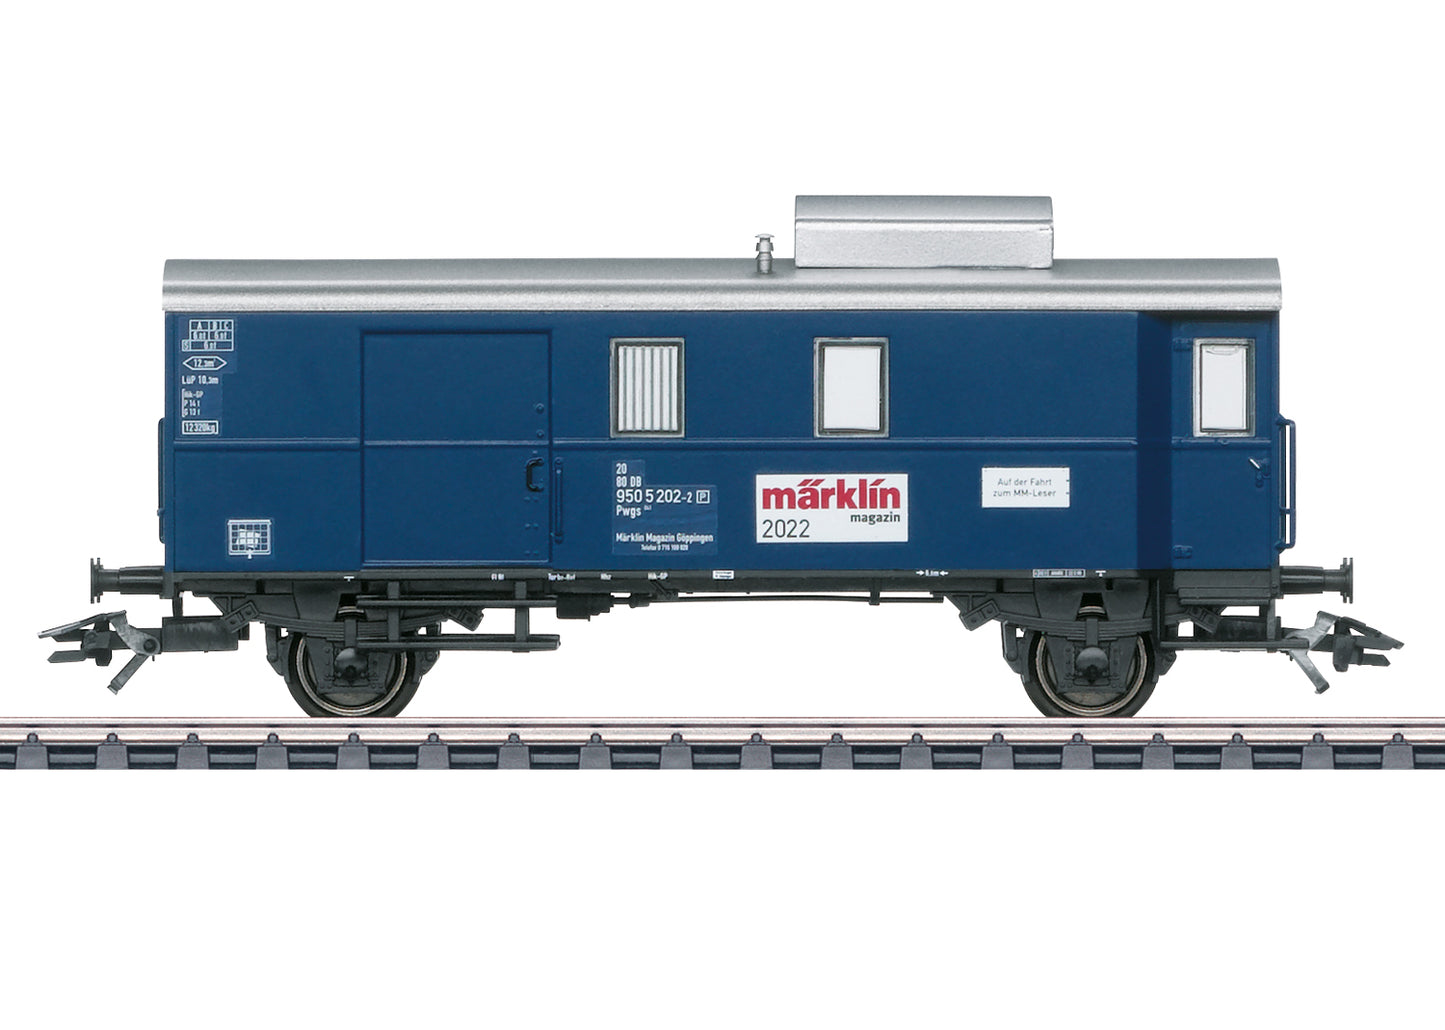 Marklin 48522 - Märklin Magazin H0 Annual Car for 2022